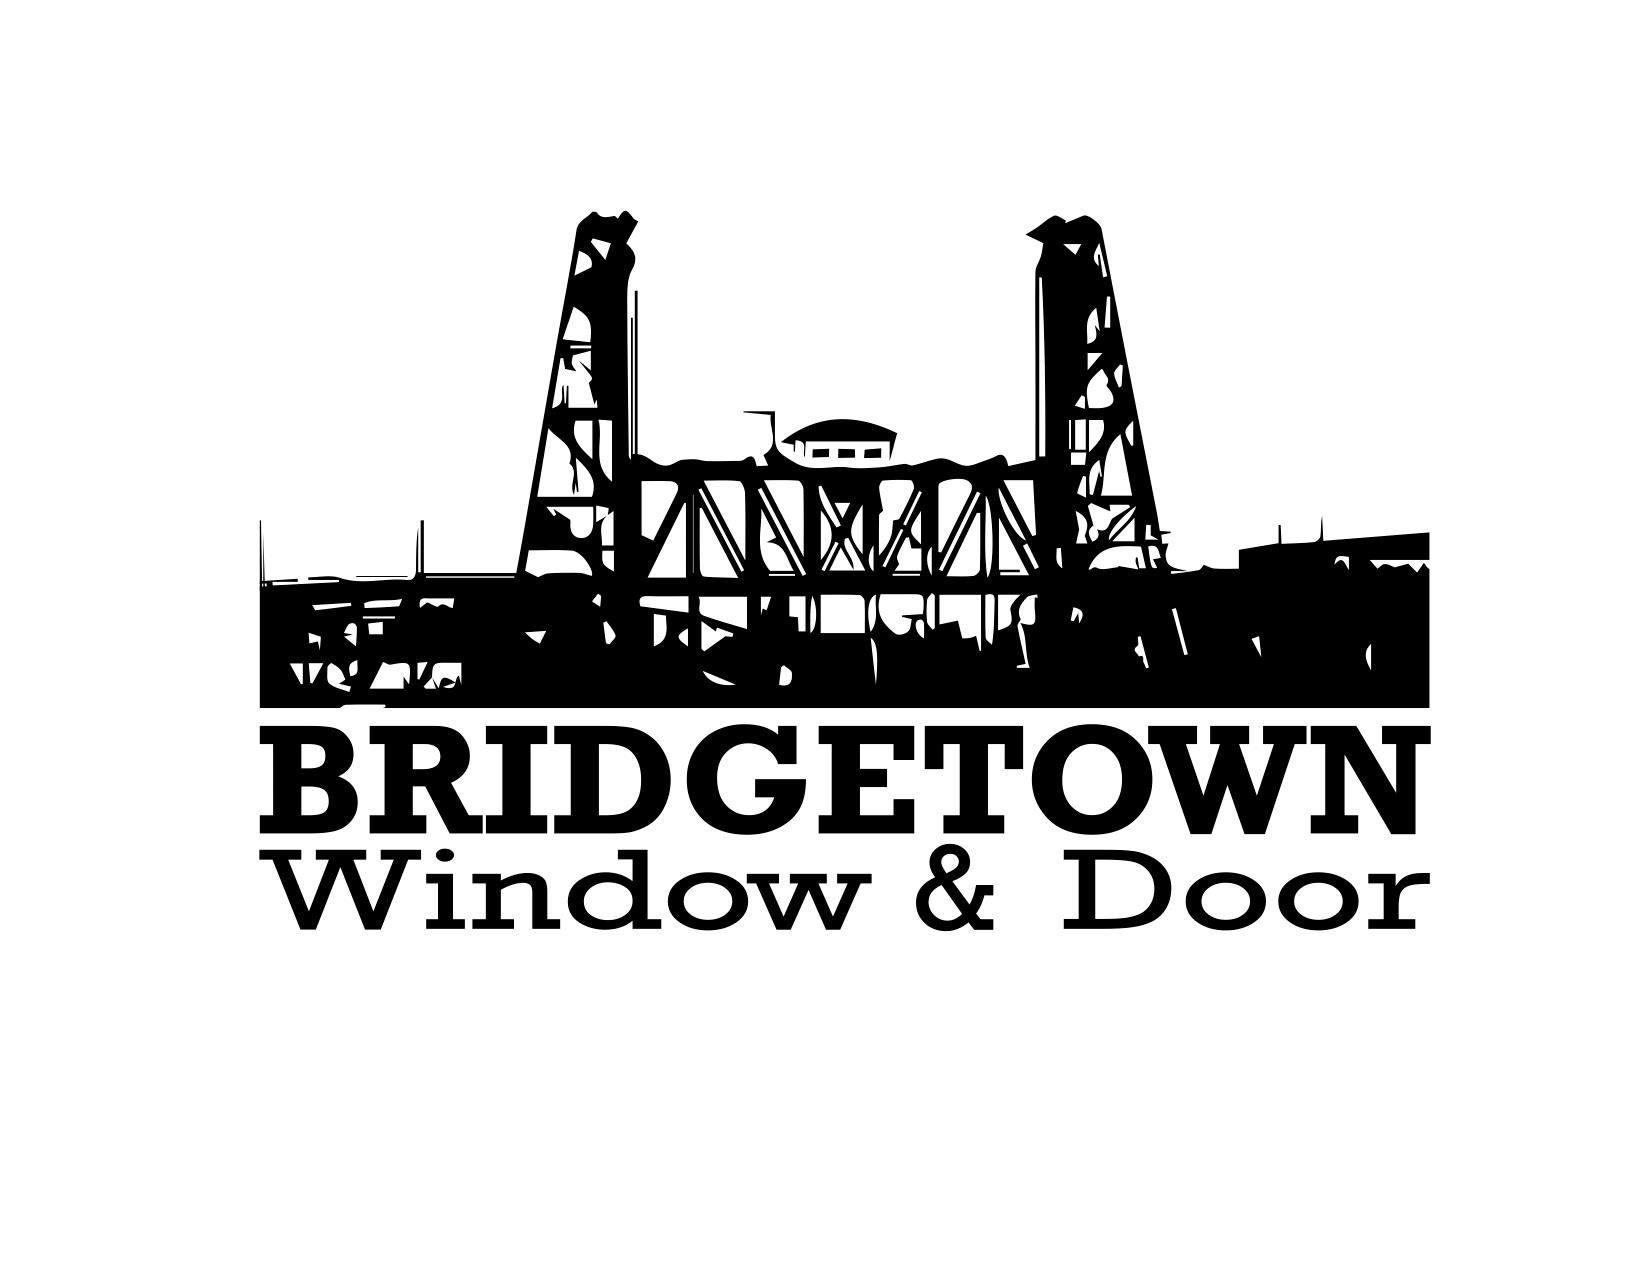 Company logo of Bridgetown Window & Door, Inc.